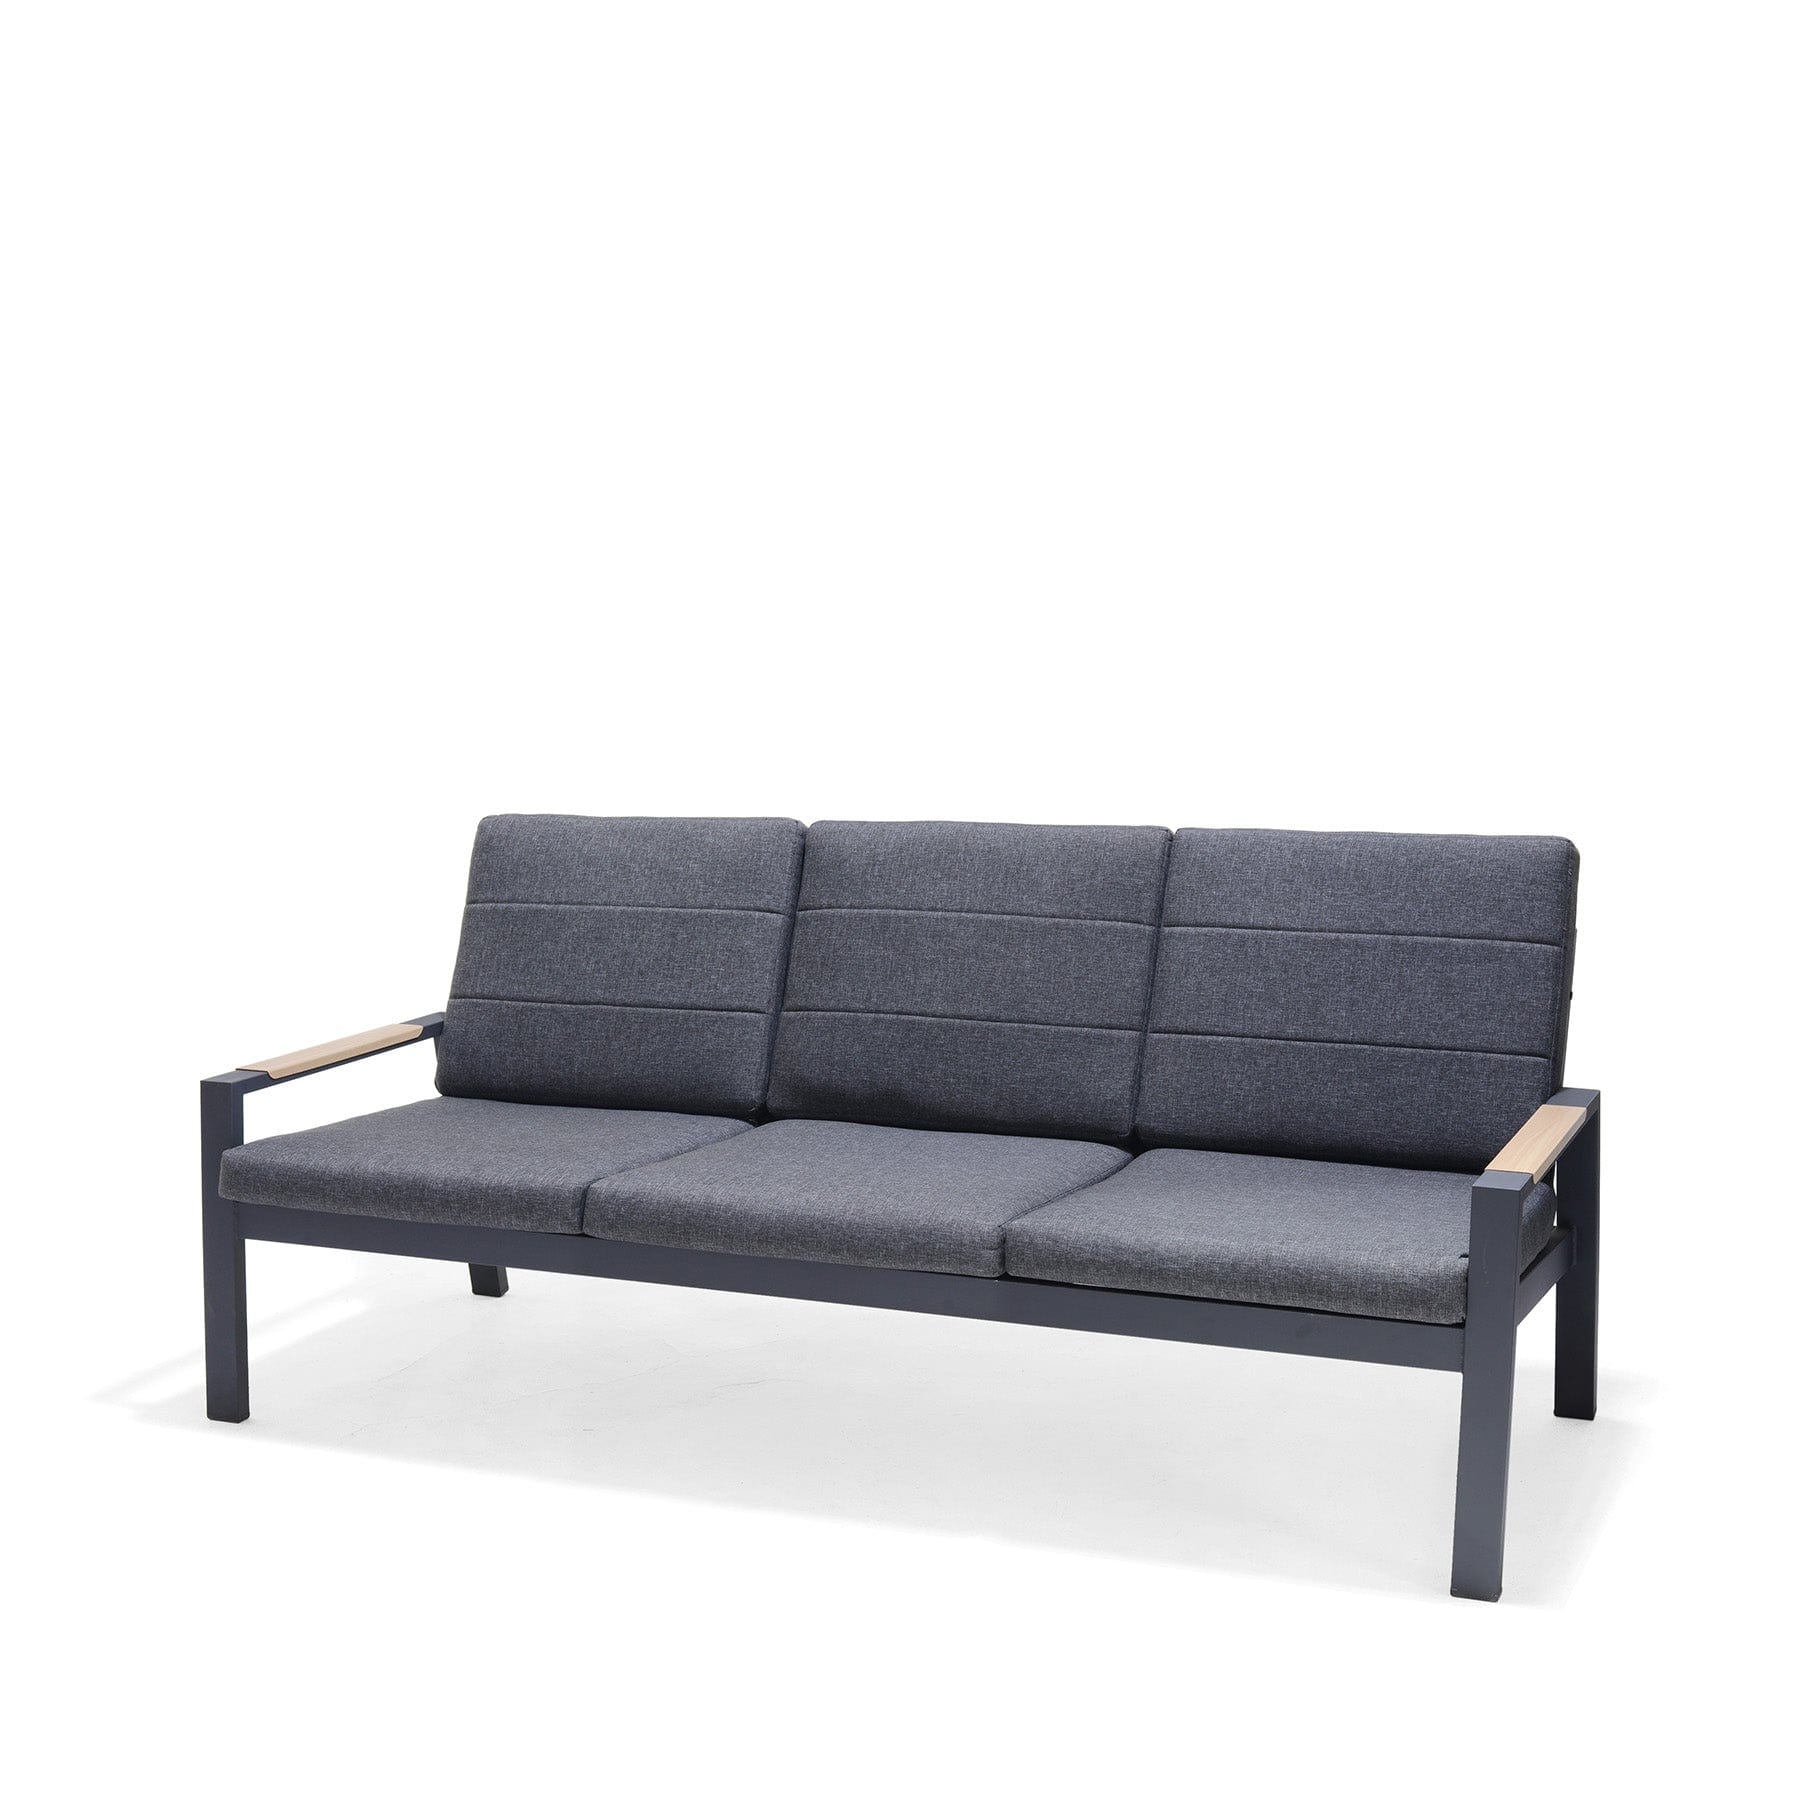 Panama dark sofa set